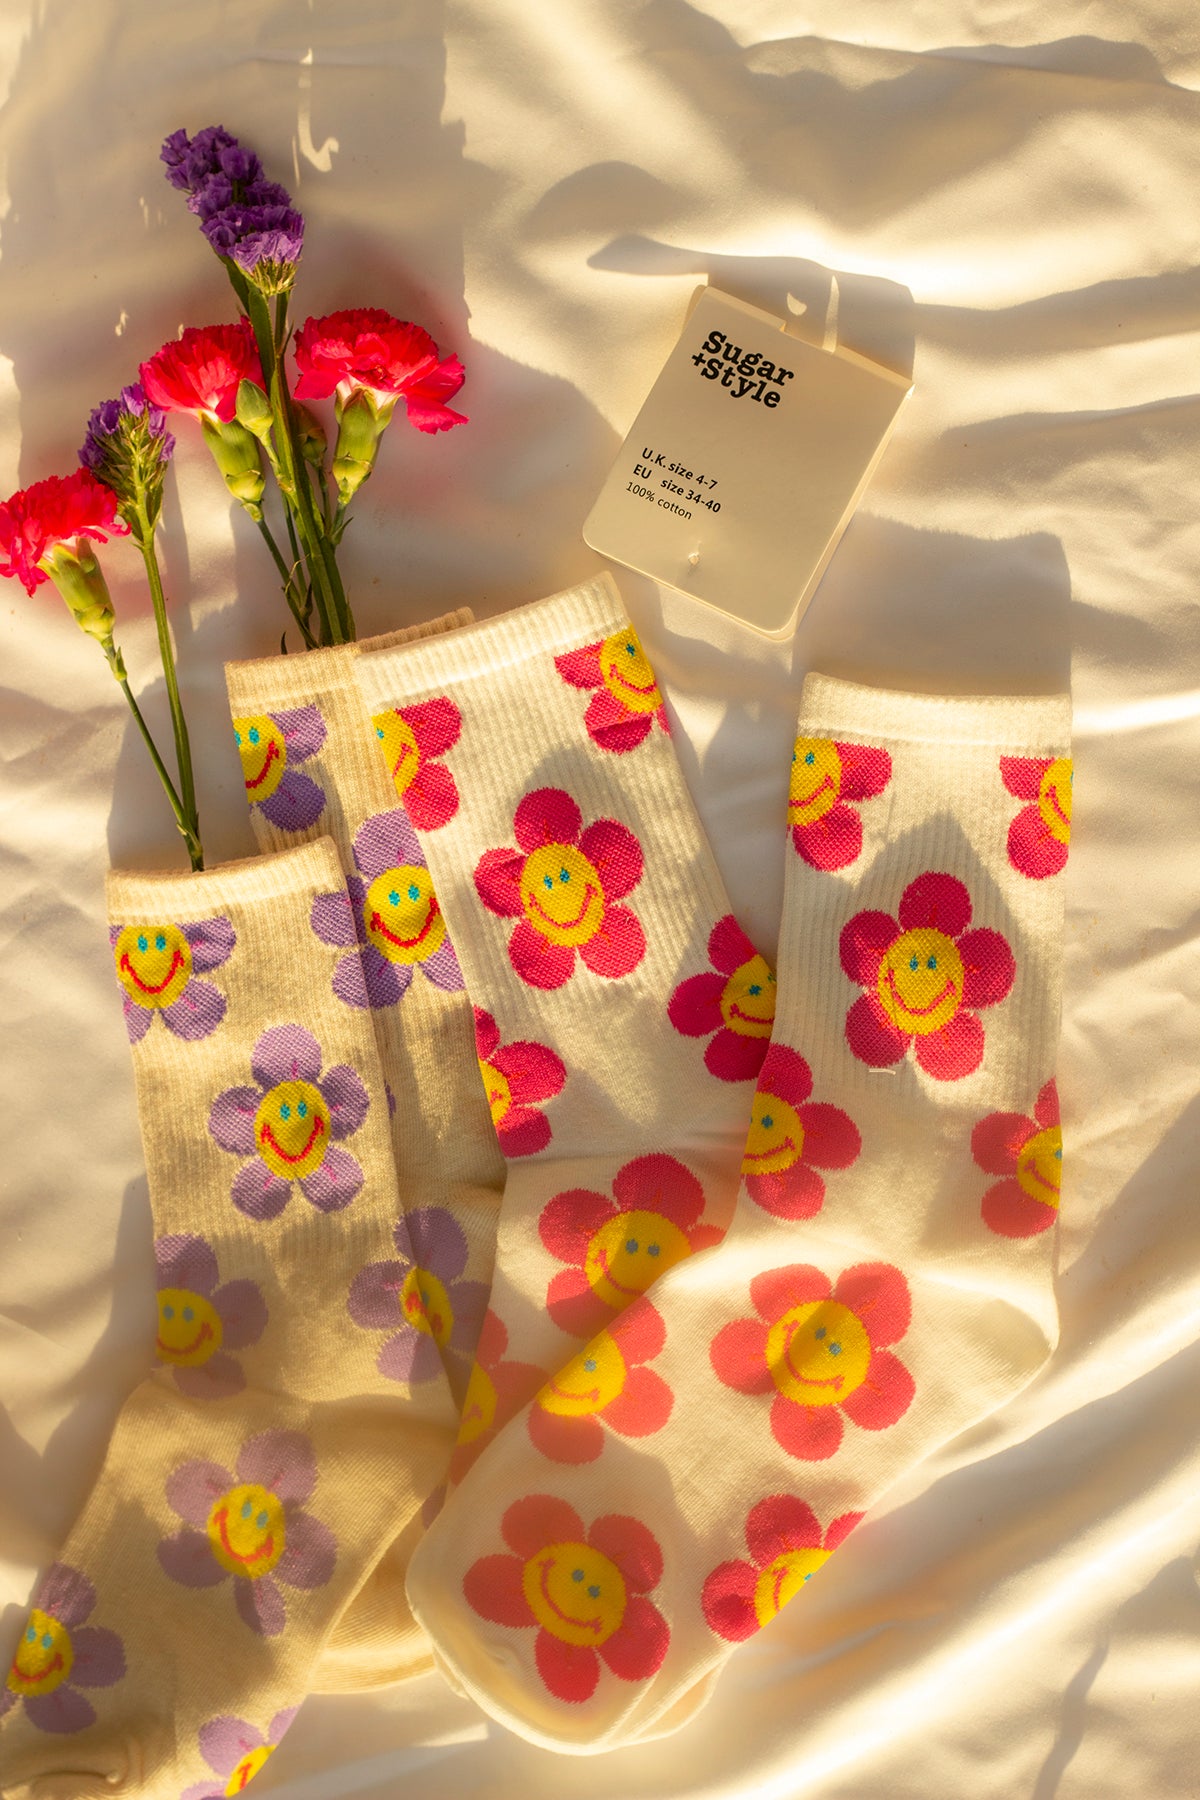 Fun Flower Socks - Sugar + Style